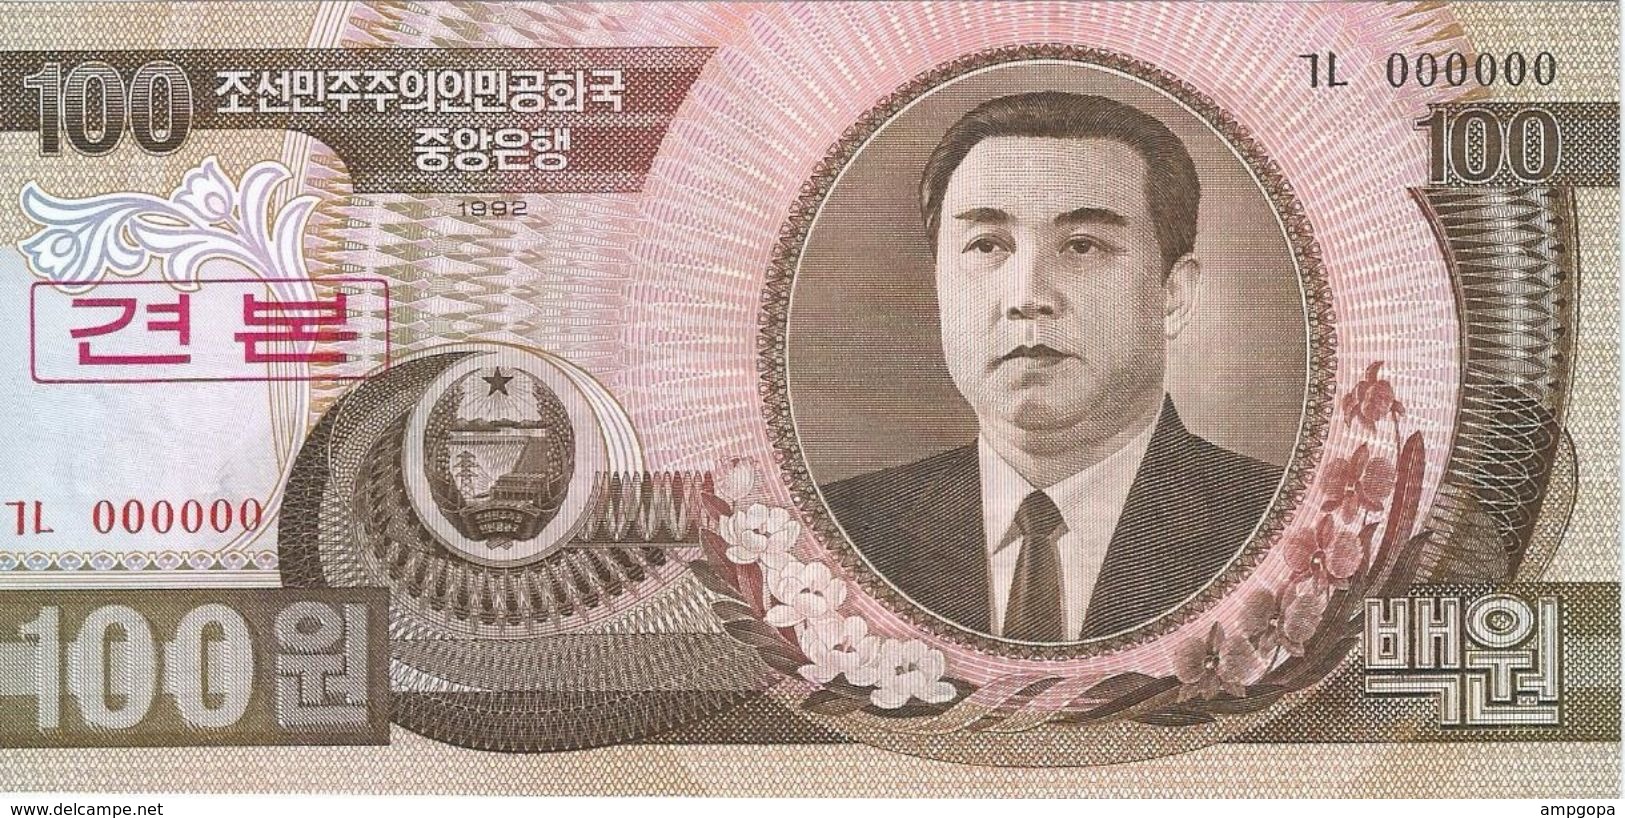 Corea Del Norte - North Korea 100 Won 1992 SPECIMEN Pick 43.s UNC Ref 566-1 - Korea, North